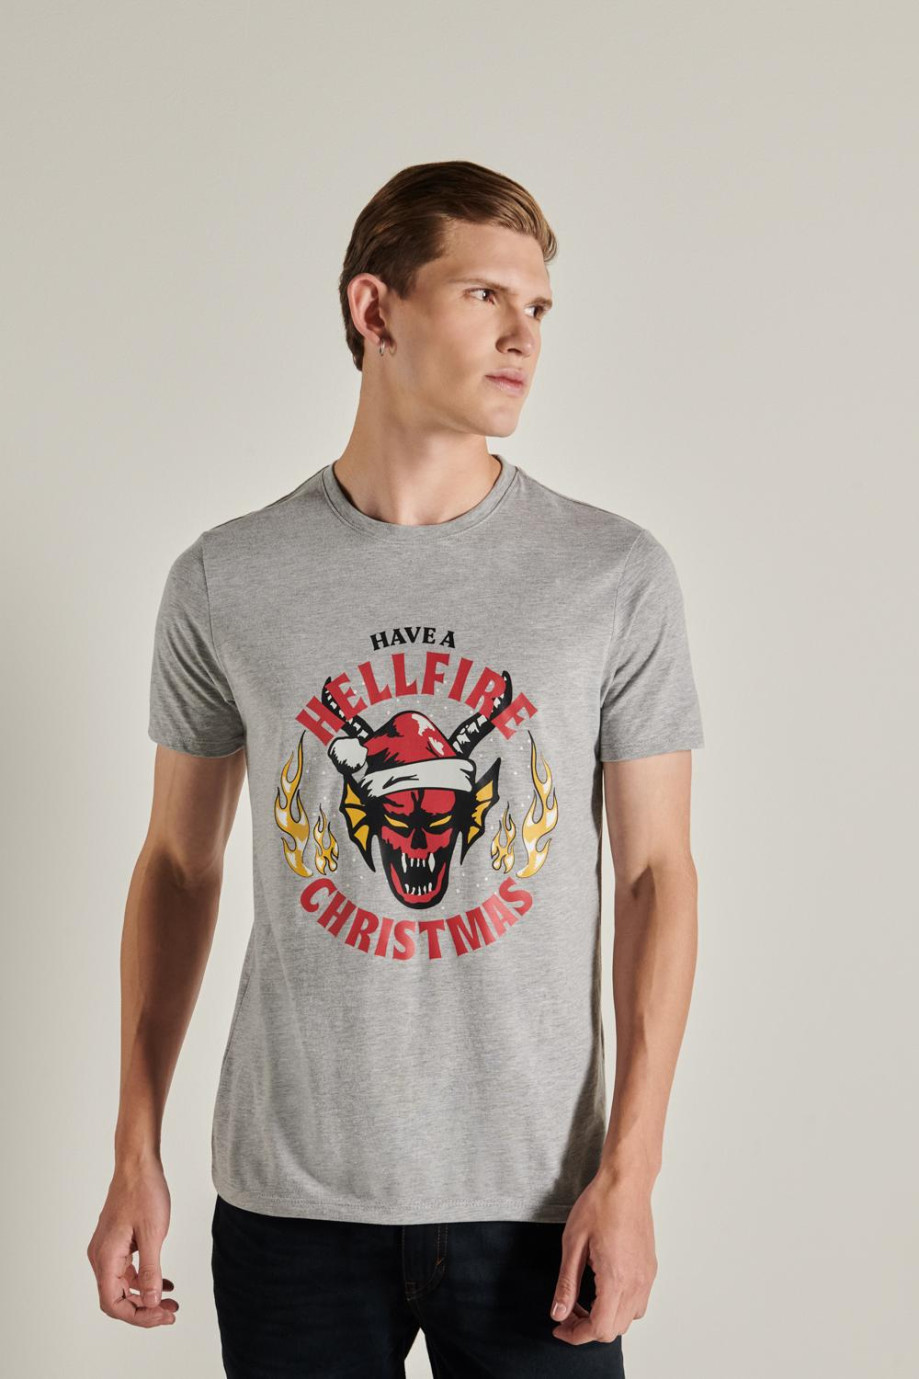 Camiseta unicolor con diseño de navidad de Stranger Things